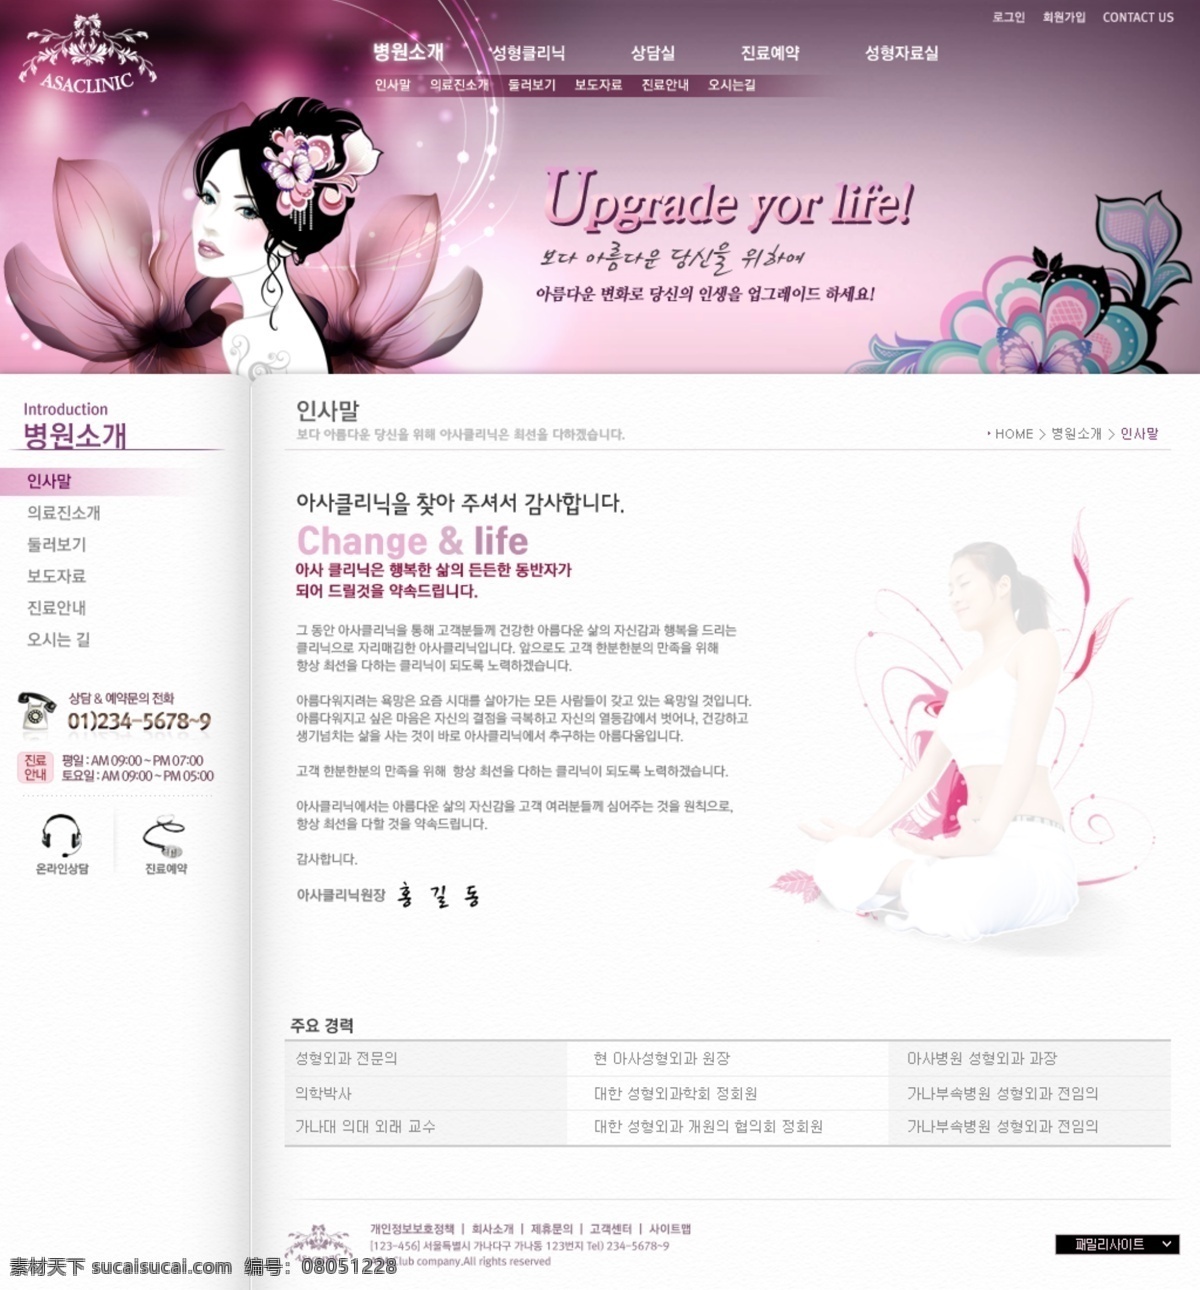 护肤 化妆 美容 网页模板 网站内页设计 源文件 美容化妆 网站 模板 模板下载 行业 宣传网站 类 韩文模板